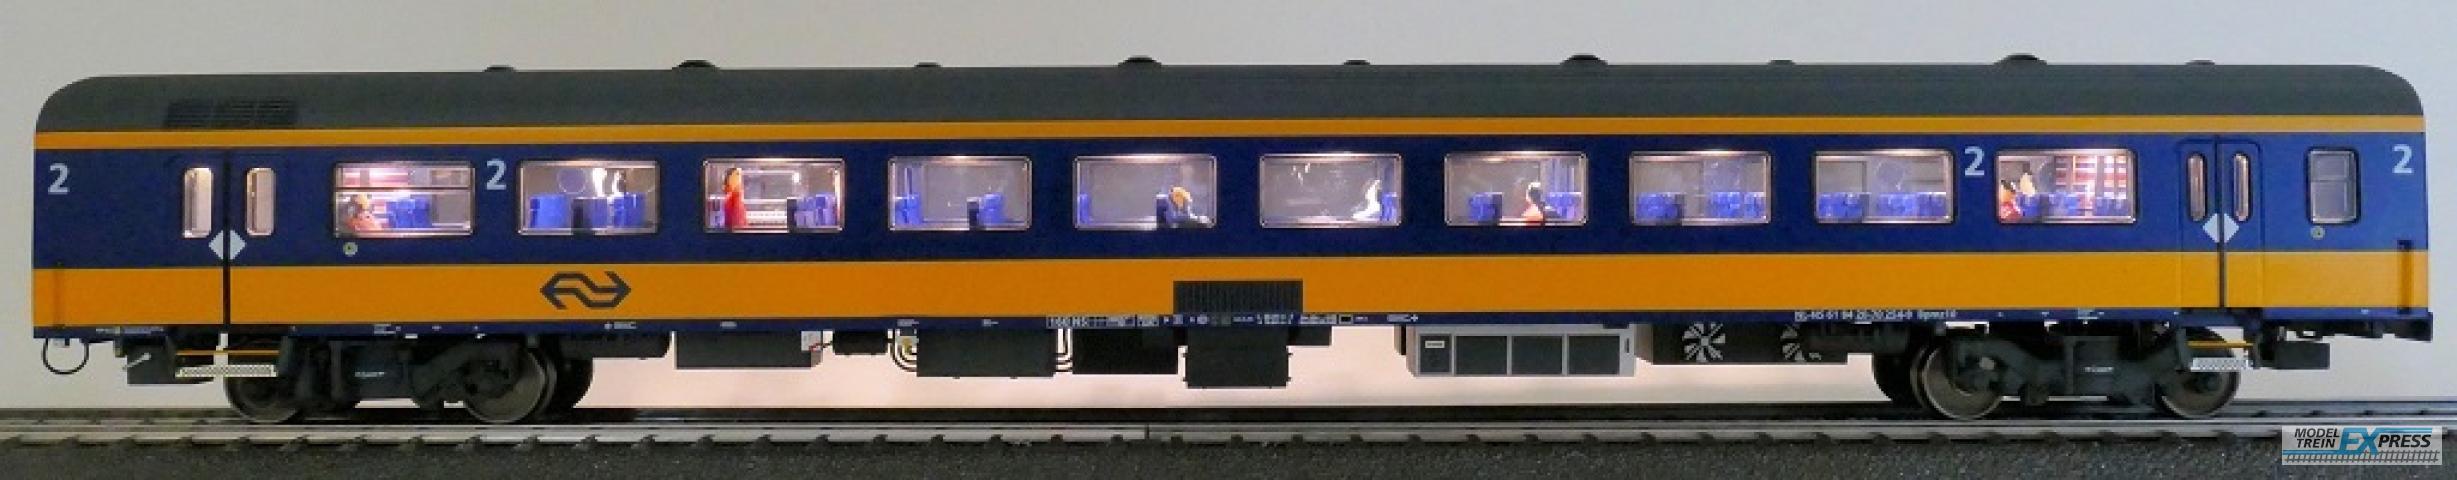 Exact-train 11154 NS ICRm Amsterdam - Breda für den Inlandseinsatz Reisezugwagen Bpmz10 ( Farbe Gelb / Blau) mit Beleuchtung und Figuren, Ep. VI